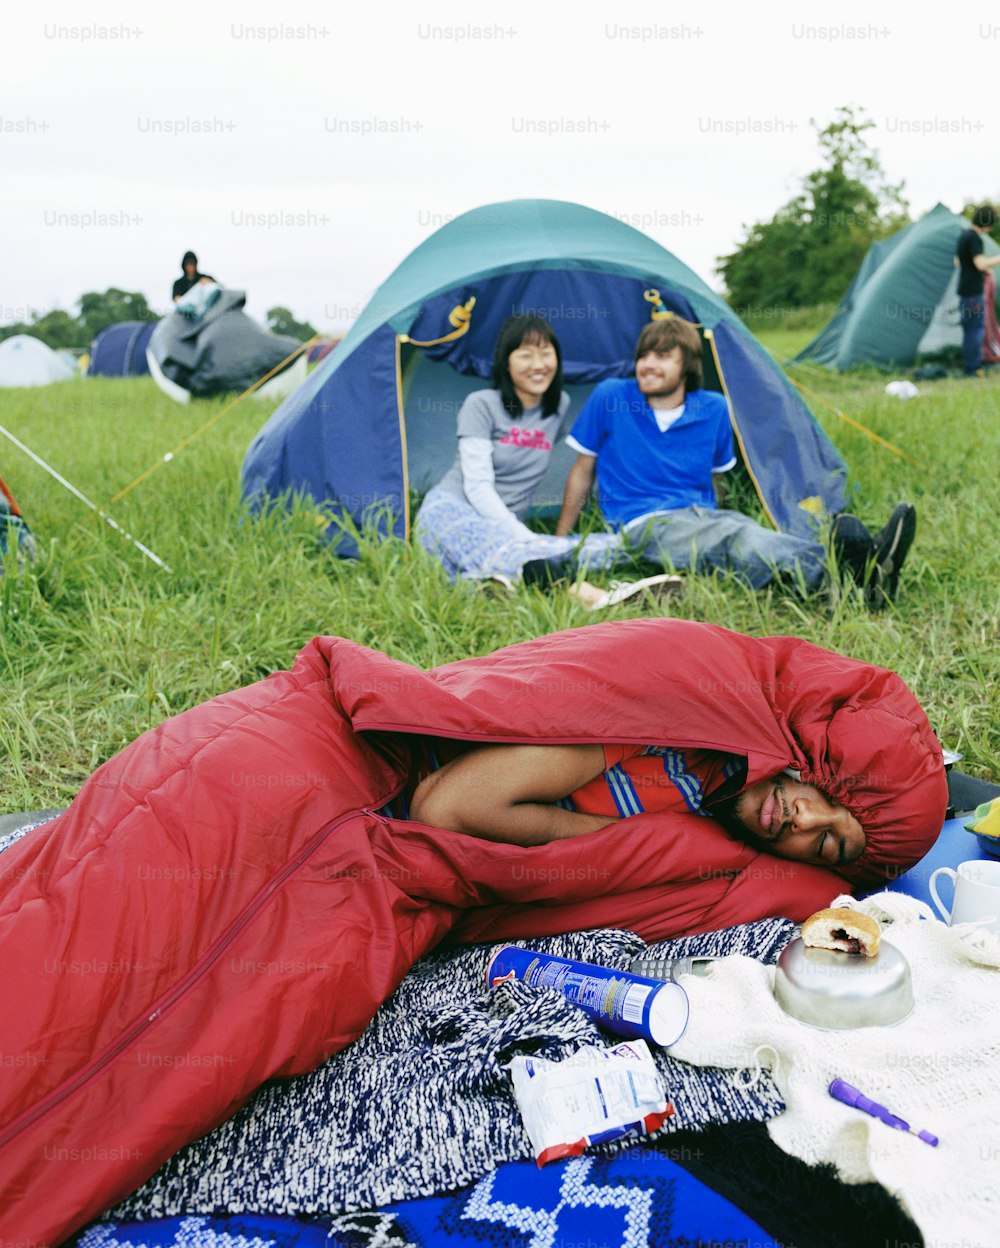 Un homme dormant dans un sac de couchage dans un champ